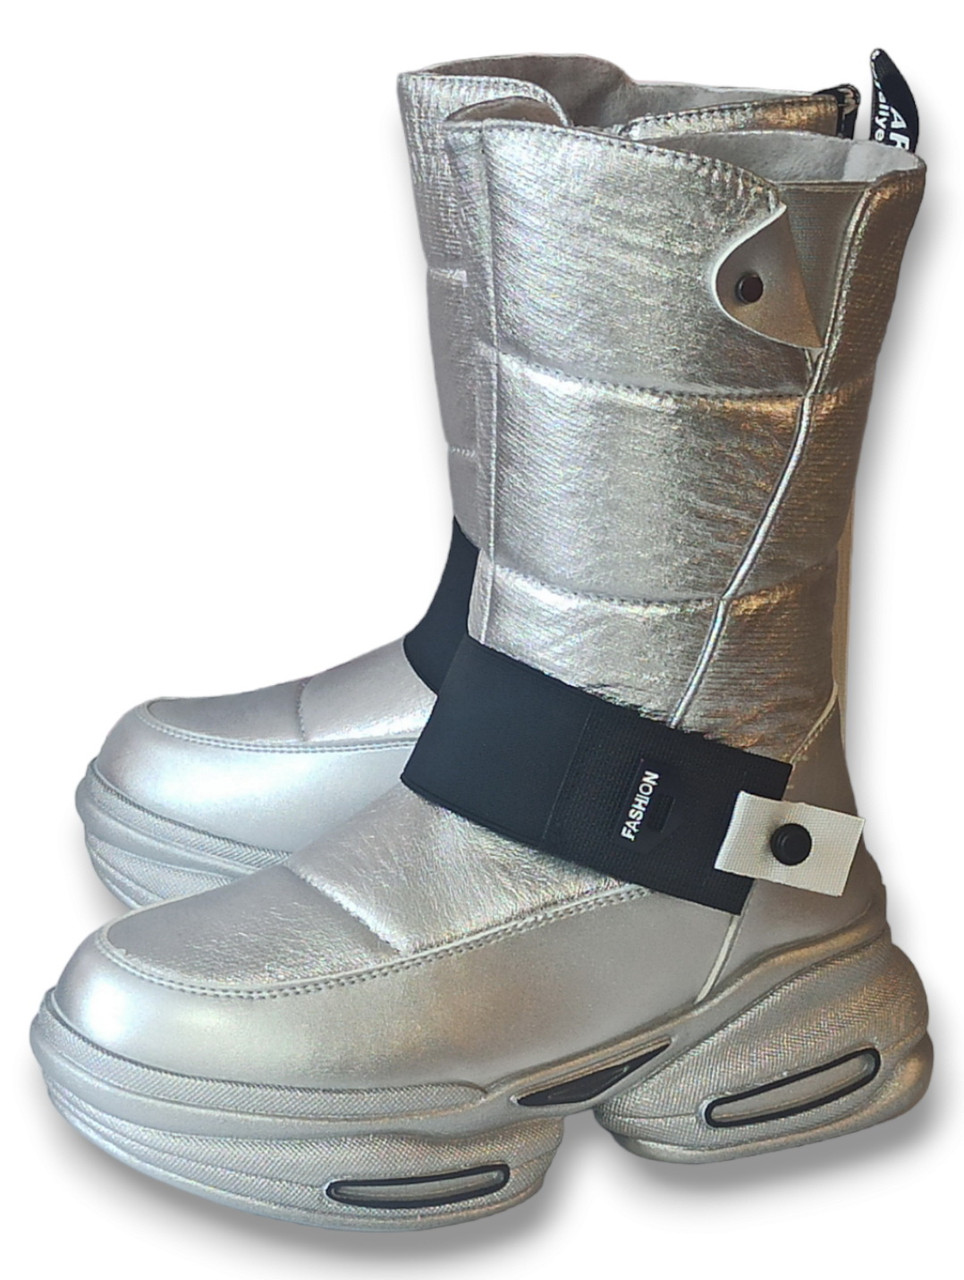 Дитячі зимові черевики чоботи для дівчинки на овчині ТОМ М 9713Е срібні. Розмір 35